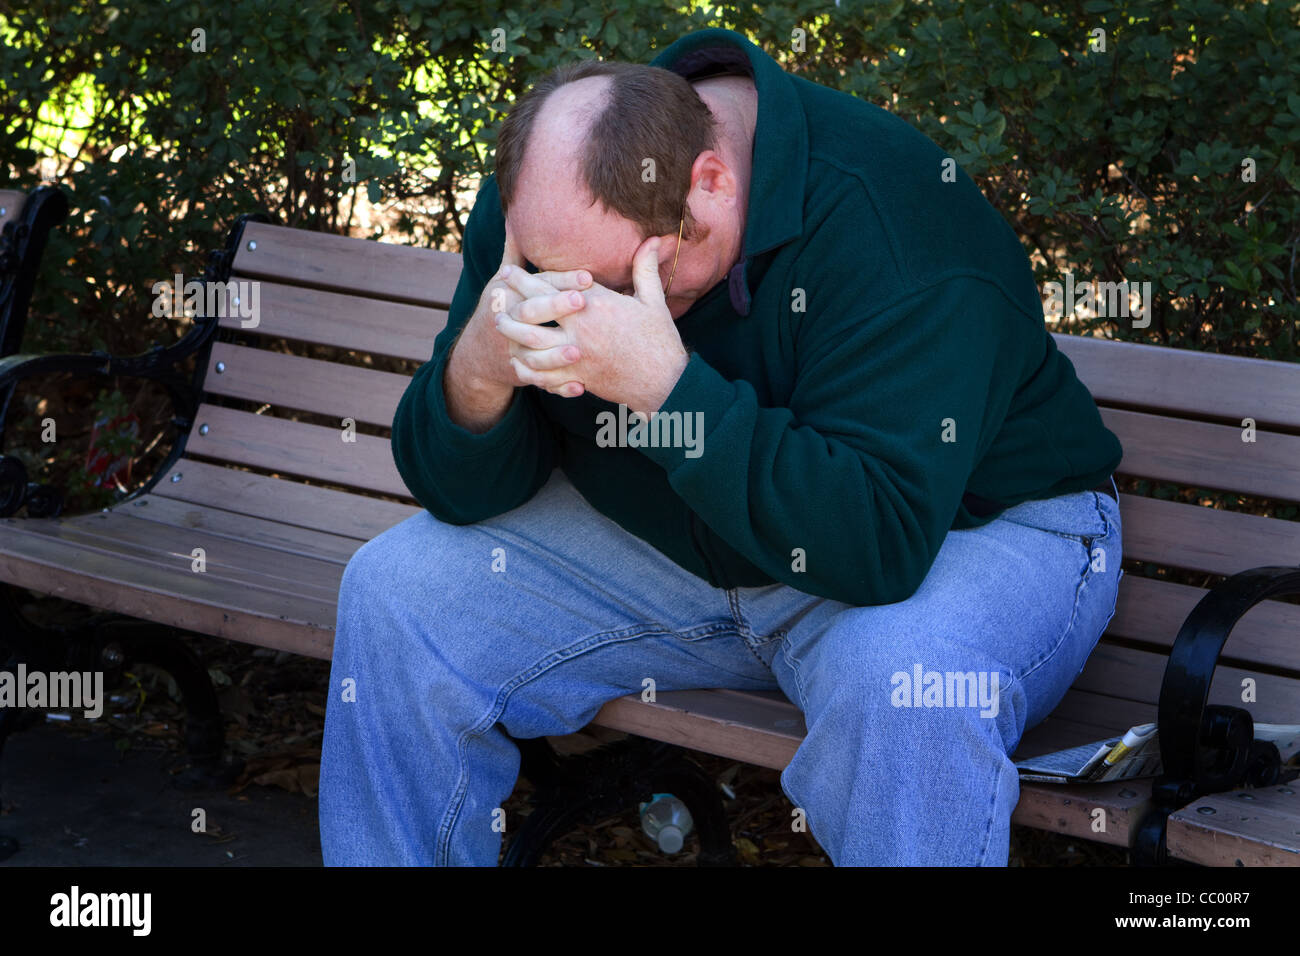 Hombre sin hogar se asienta en una zona trash de un parque en un estado de ánimo deprimido. Foto de stock